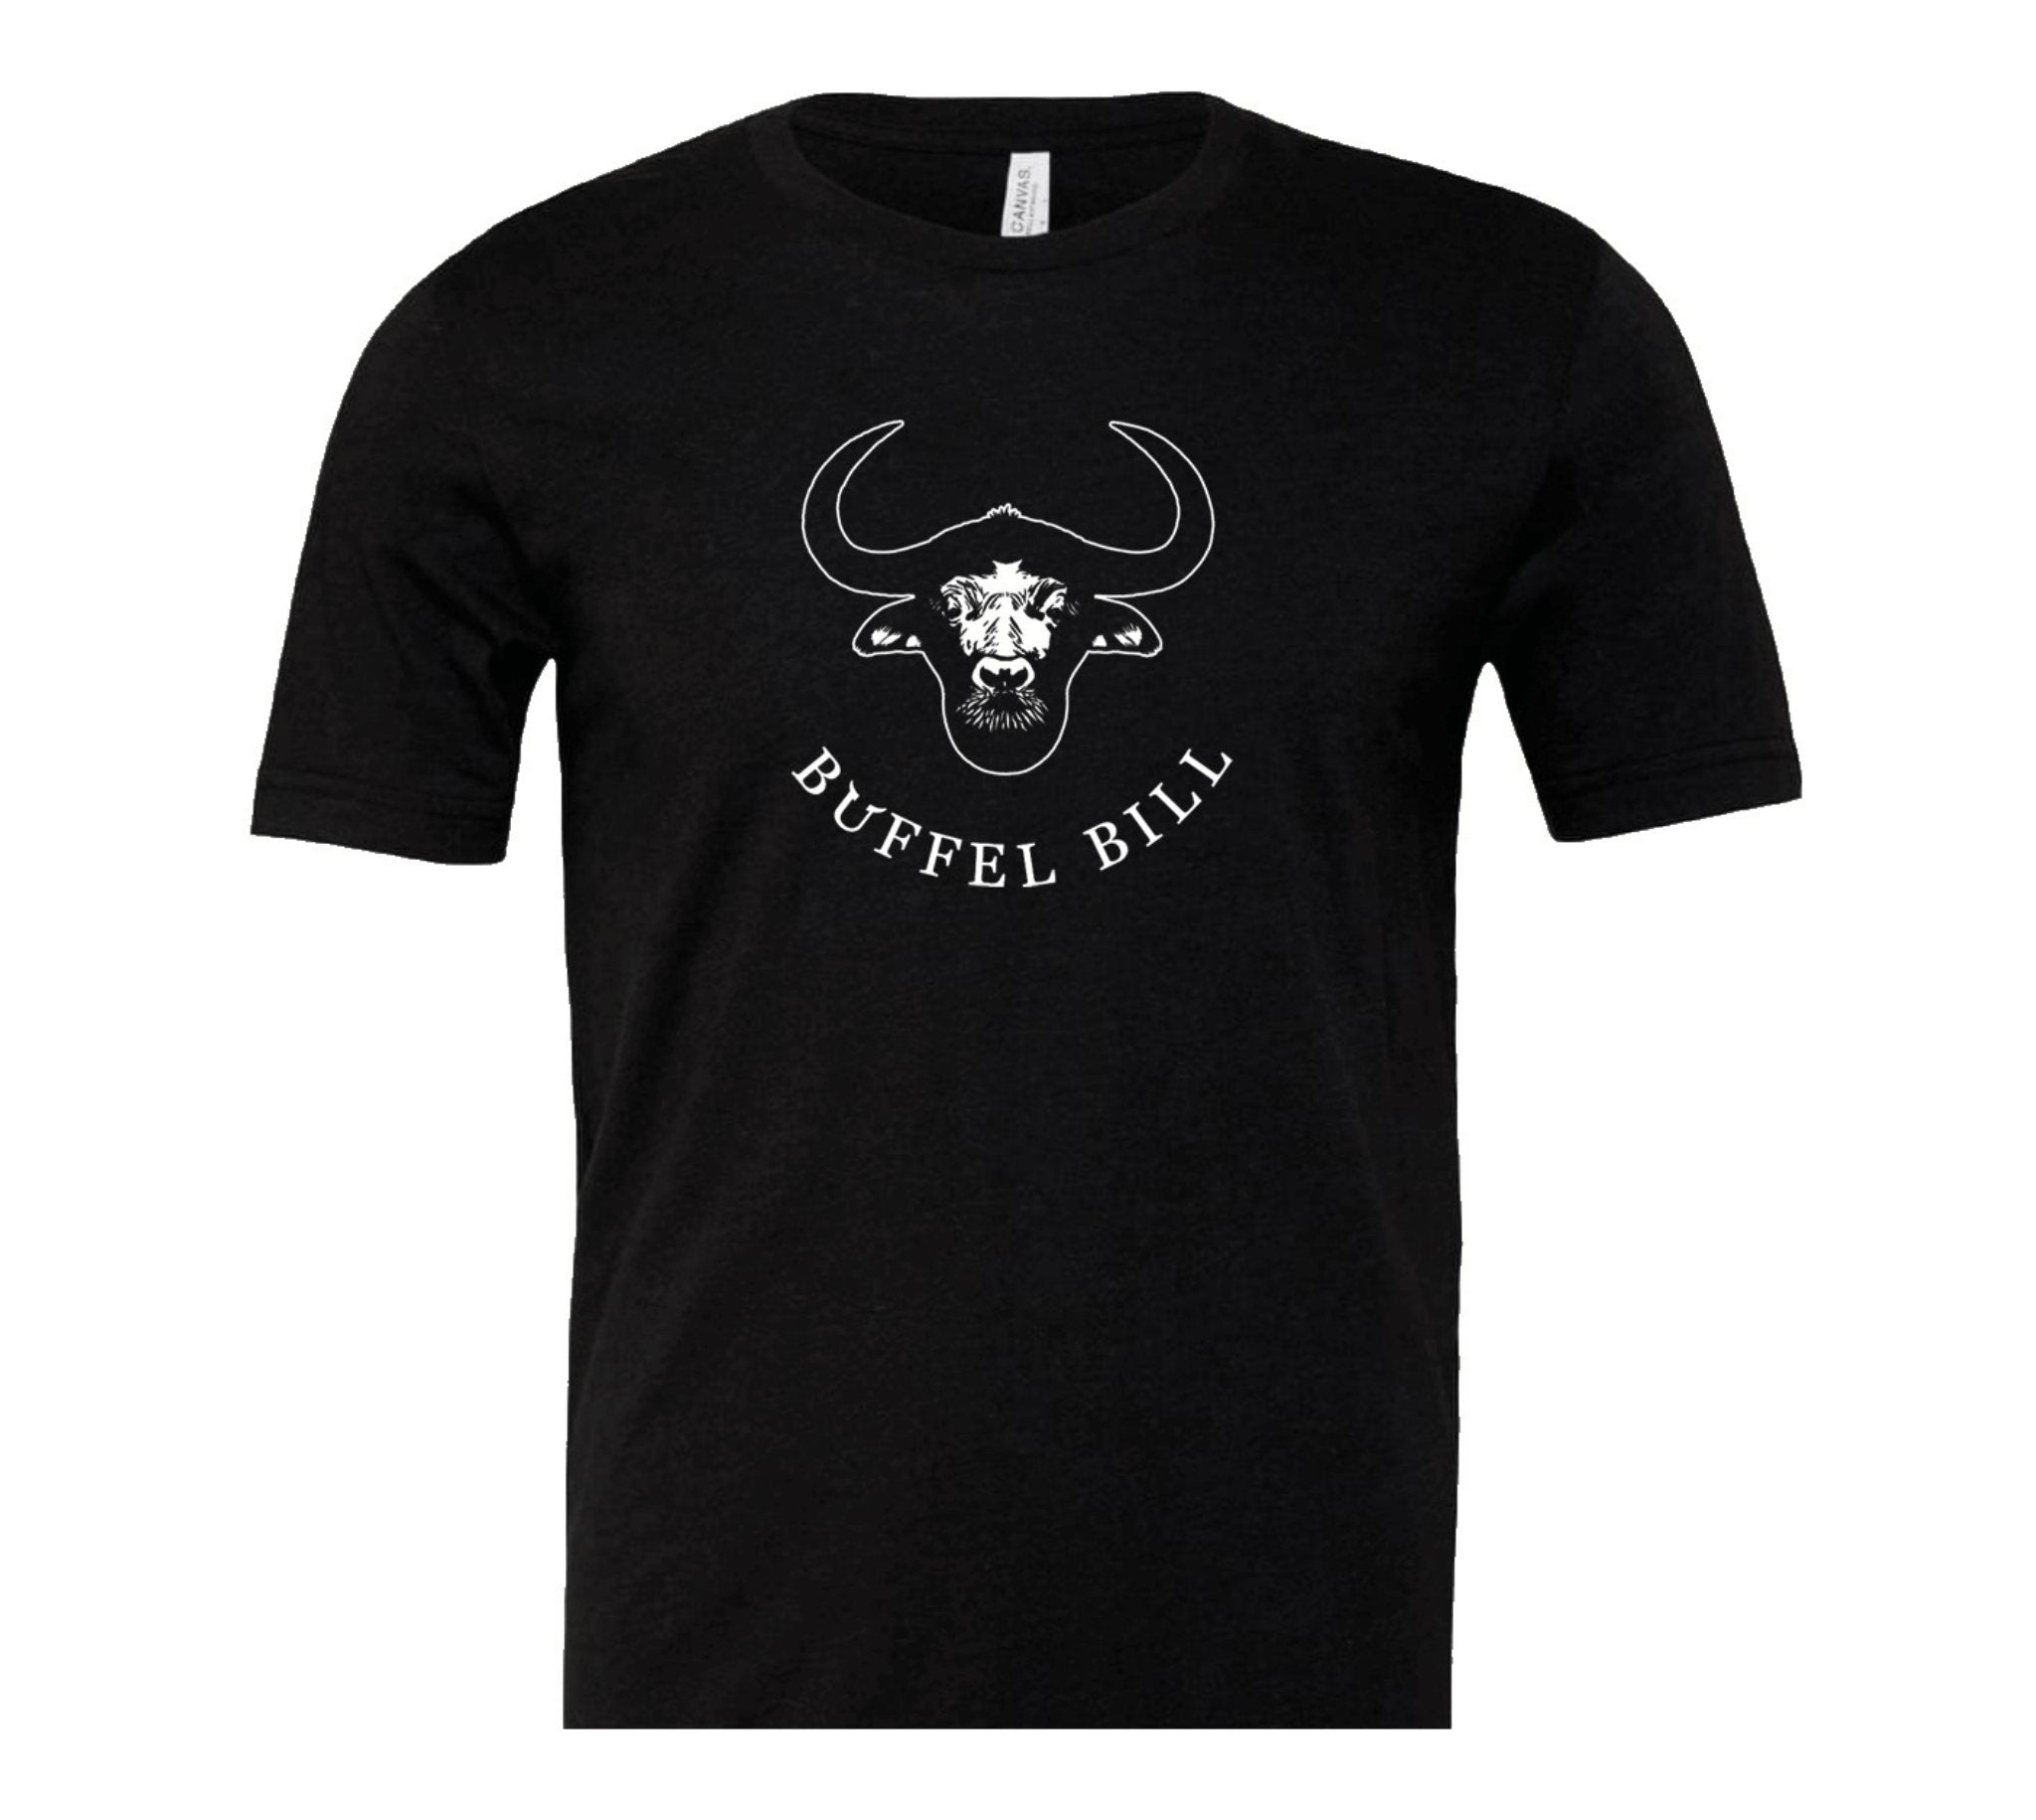 Büffel Bill T-Shirt 100% Baumwolle - Gourmet & Grillmeister Bekleidung Kaufen Sie das hochwertige Büffel Bill T-Shirt, perfekt für Grillmeister und Hobbyköche. Aus 100% Baumwolle für maximalen Komfort. Jetzt nur bei BüffelBill.